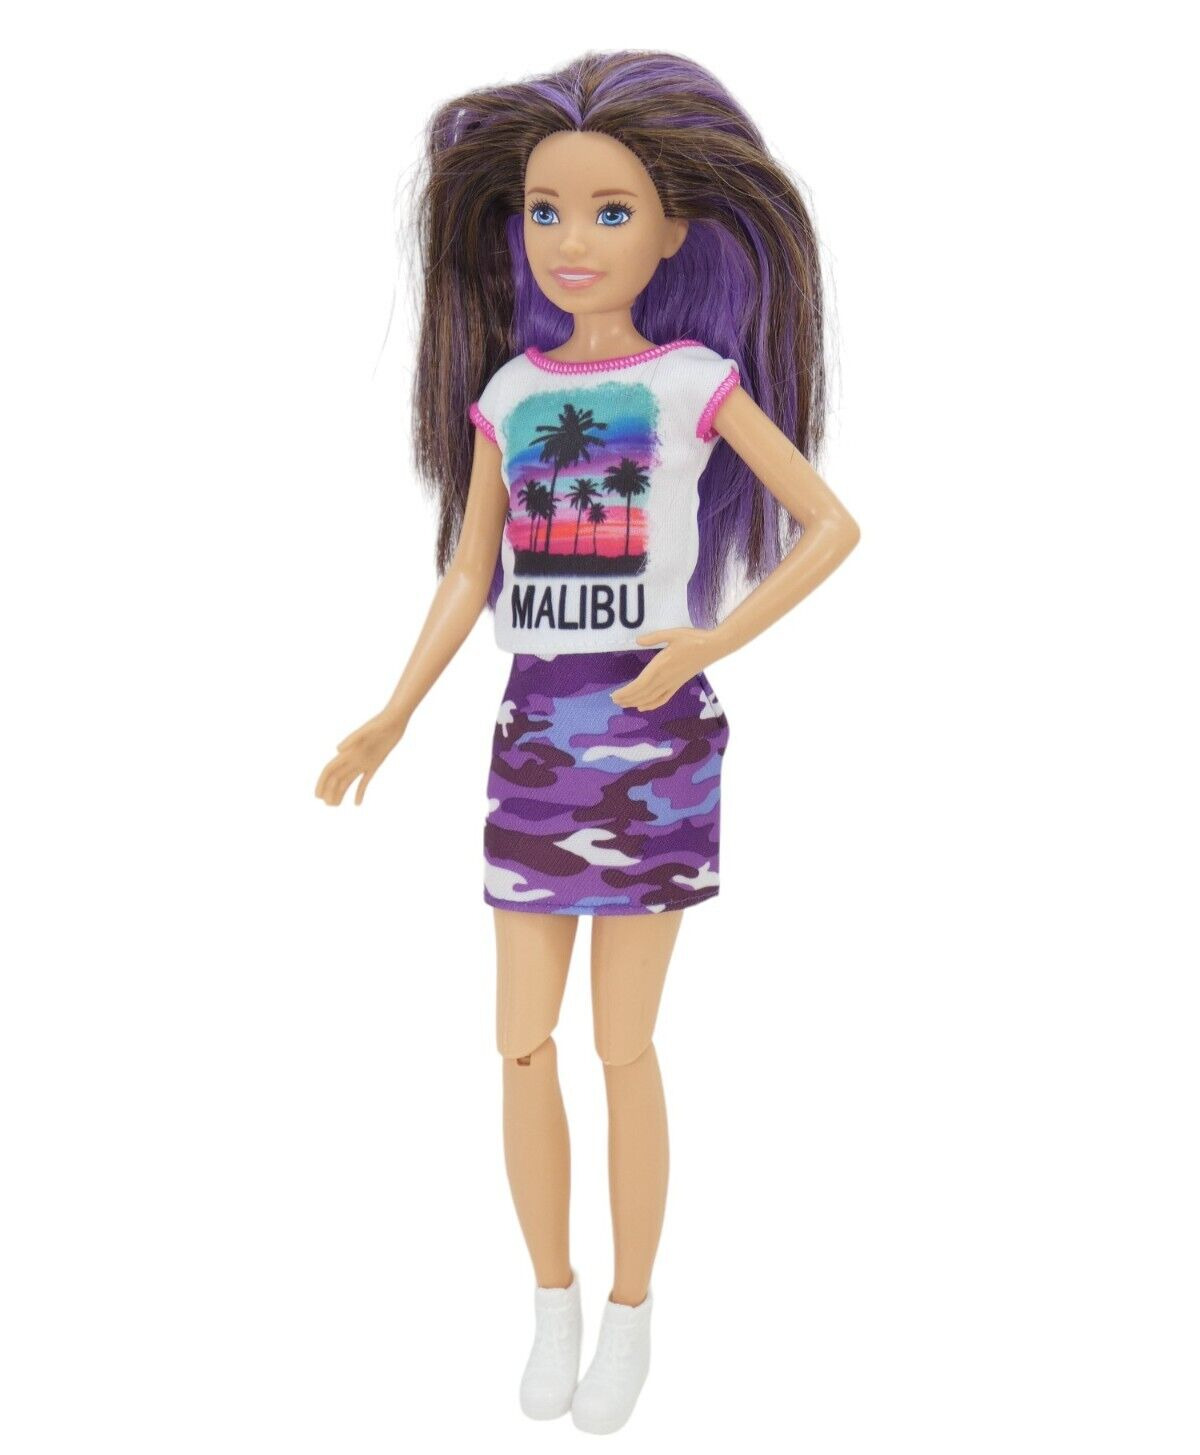 Mattel Barbie Skipper Doll 2016 Malibu Glam Outfit Purple Hair Articulated Legs